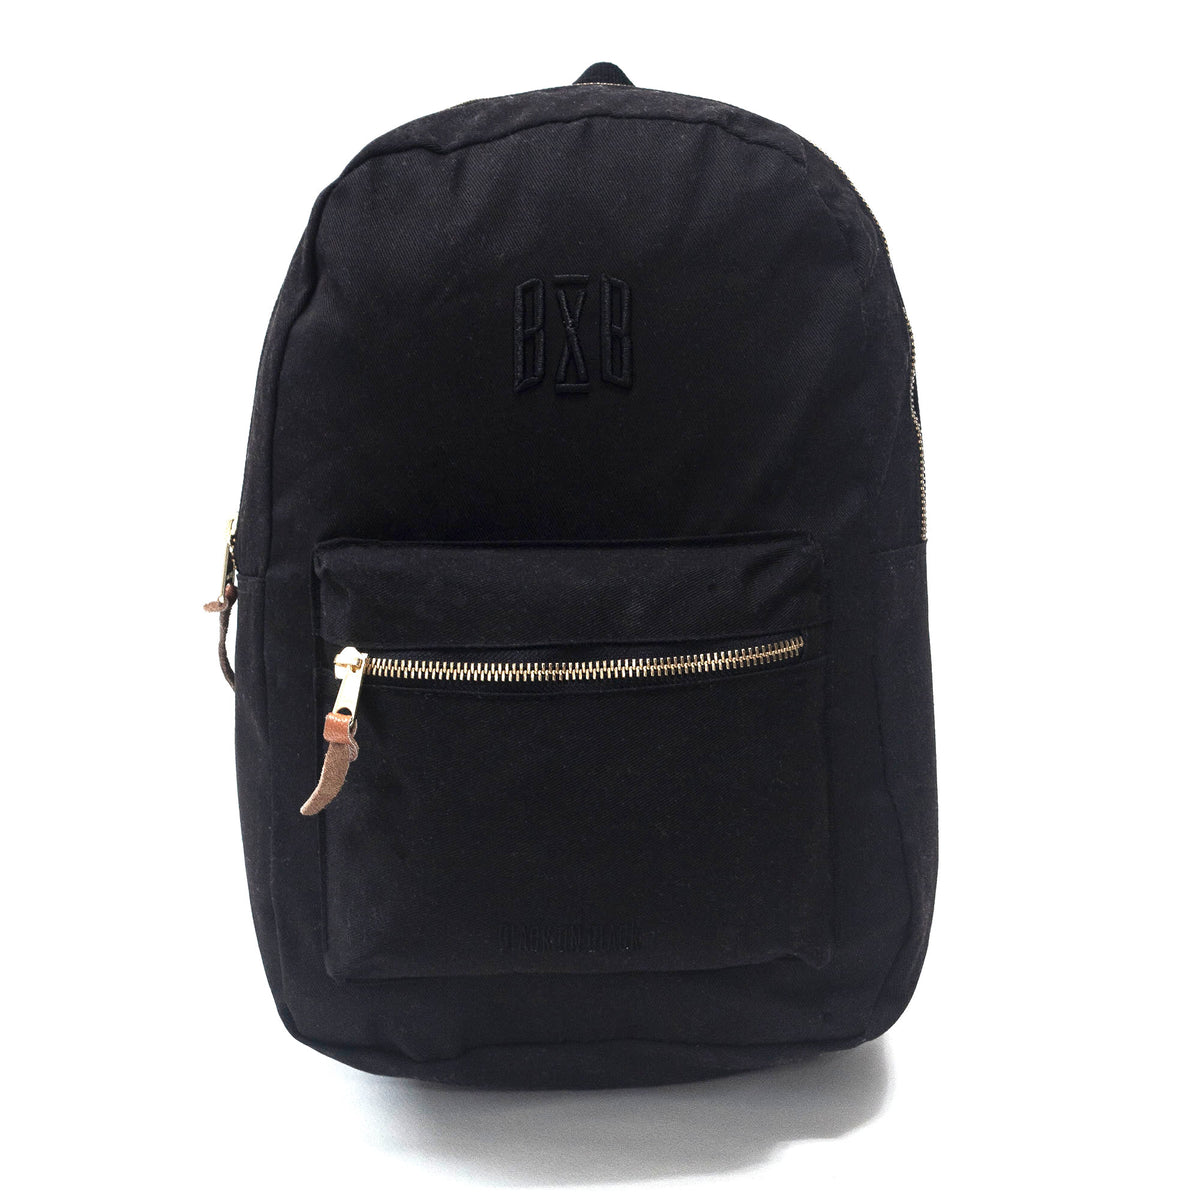 Black On Black Backpack - 